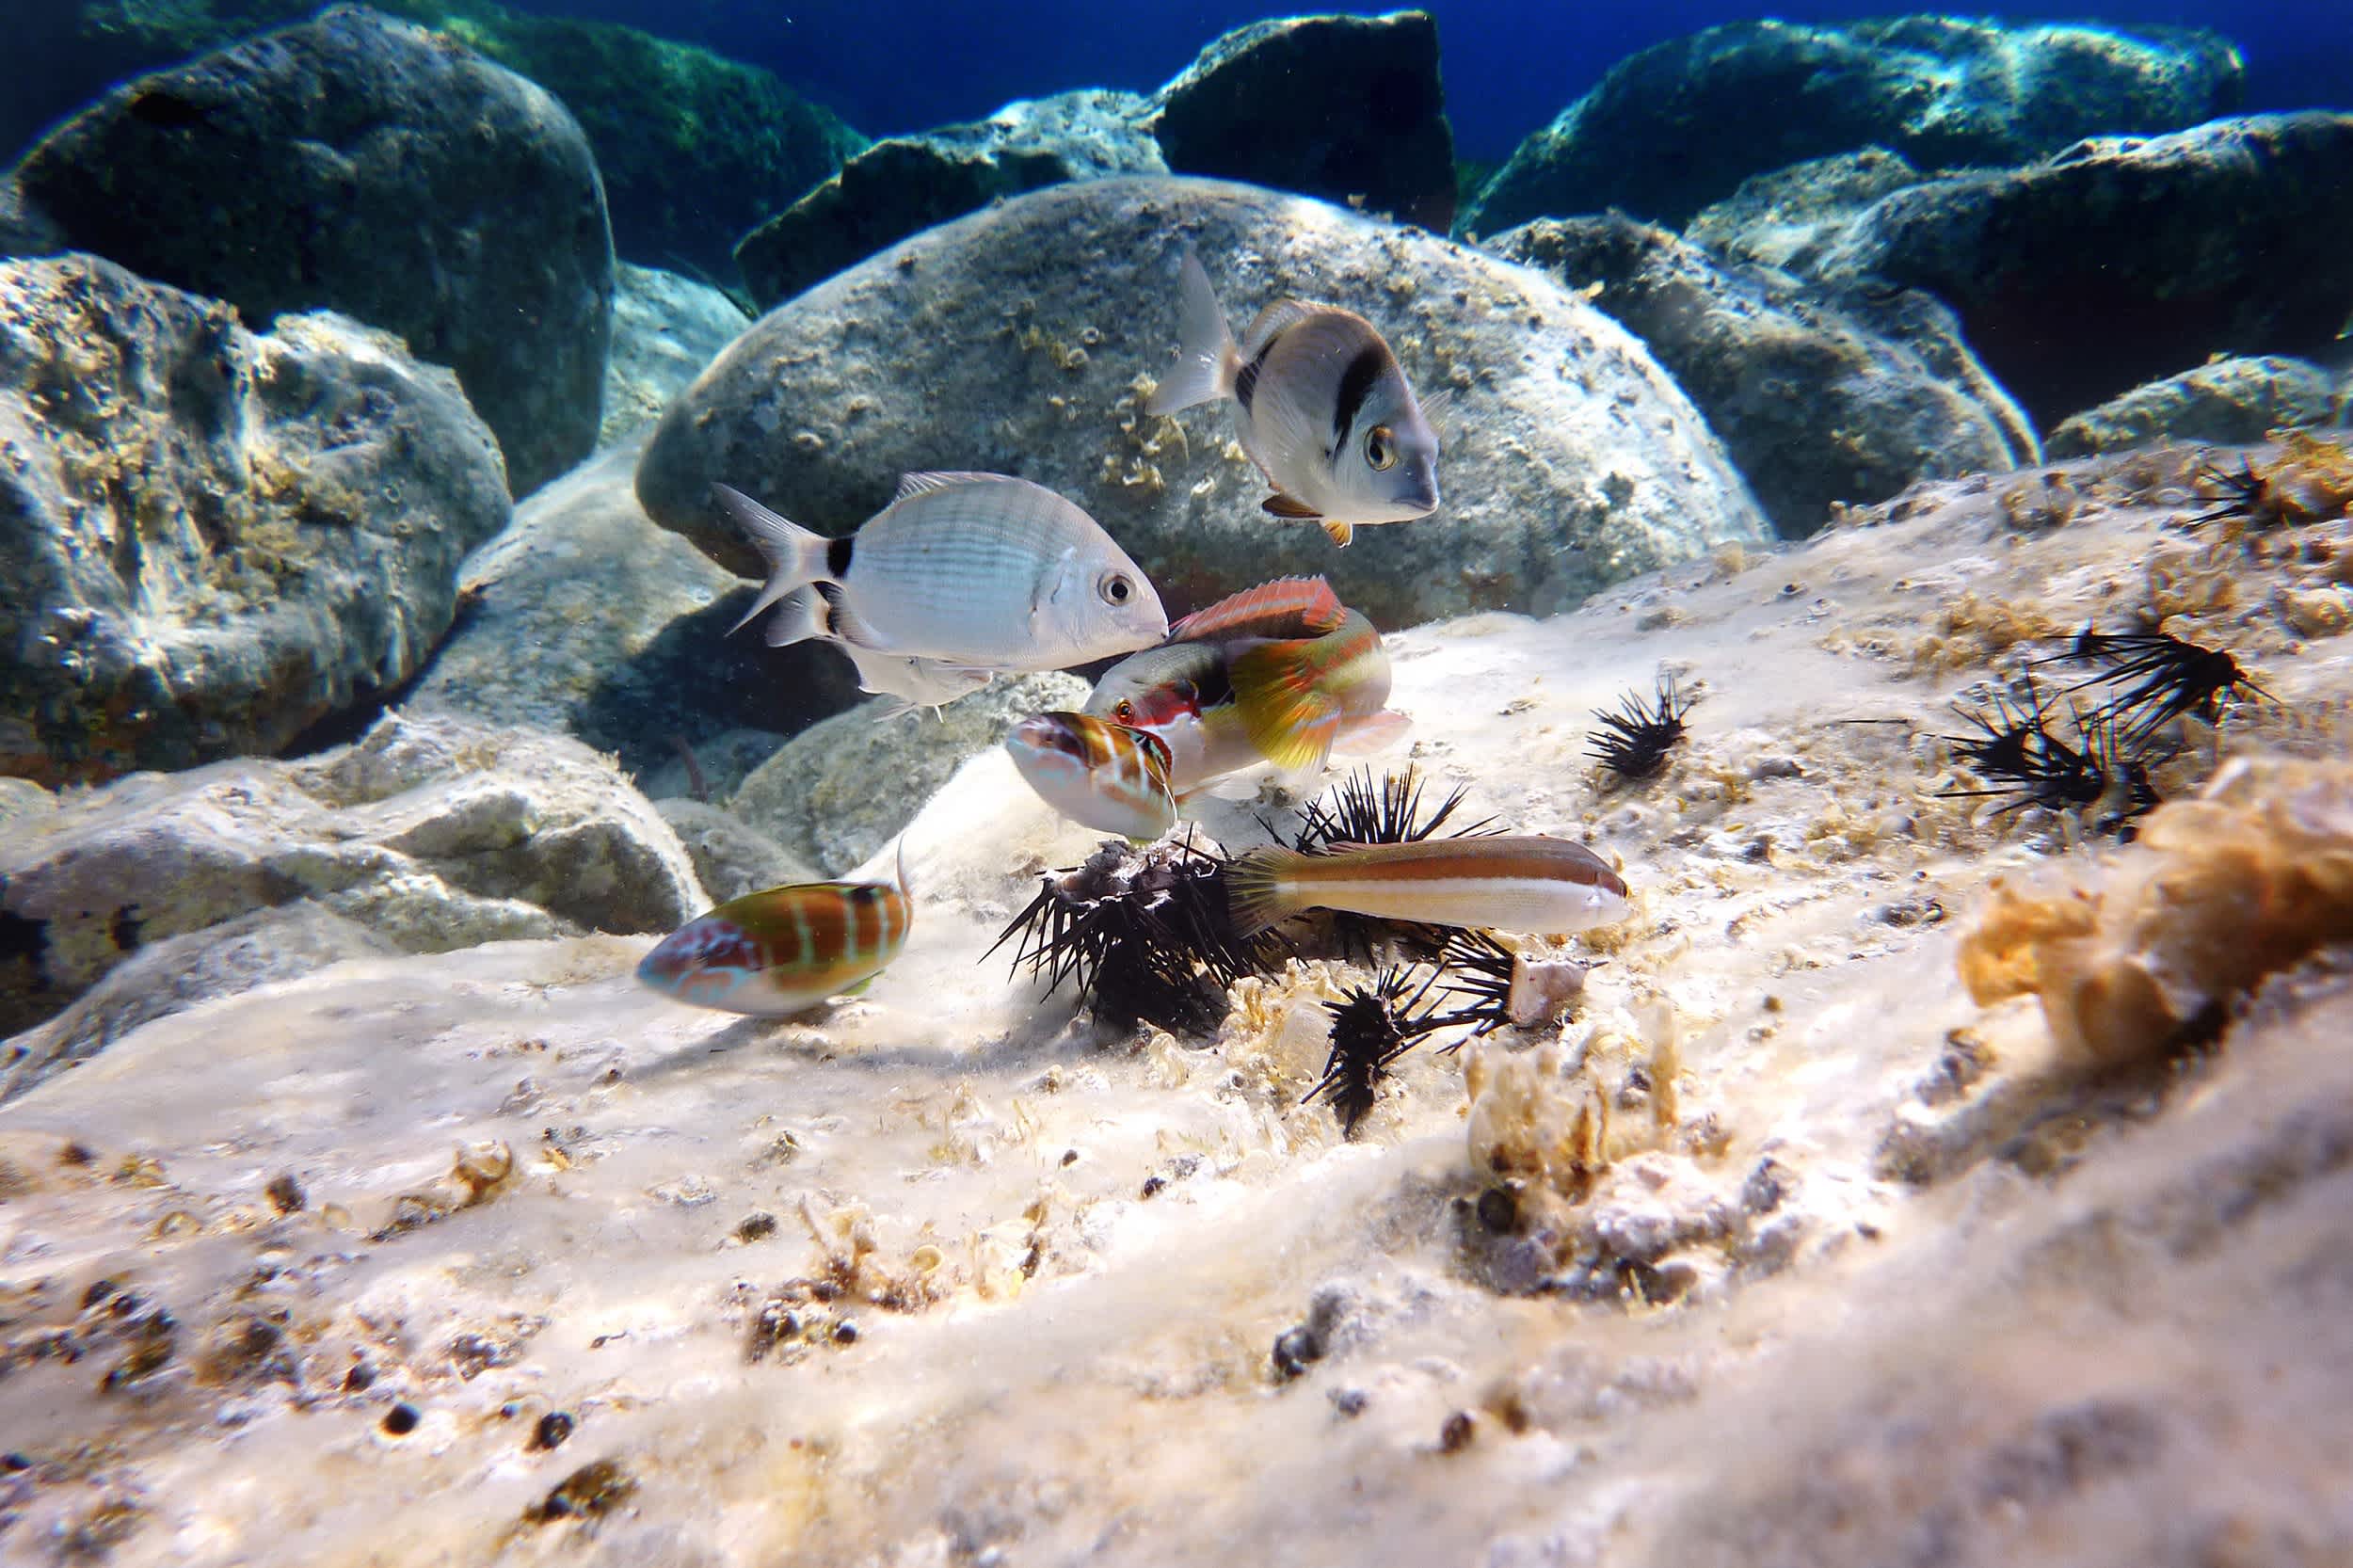 Mittelmeerfische mit einem Seeigel

